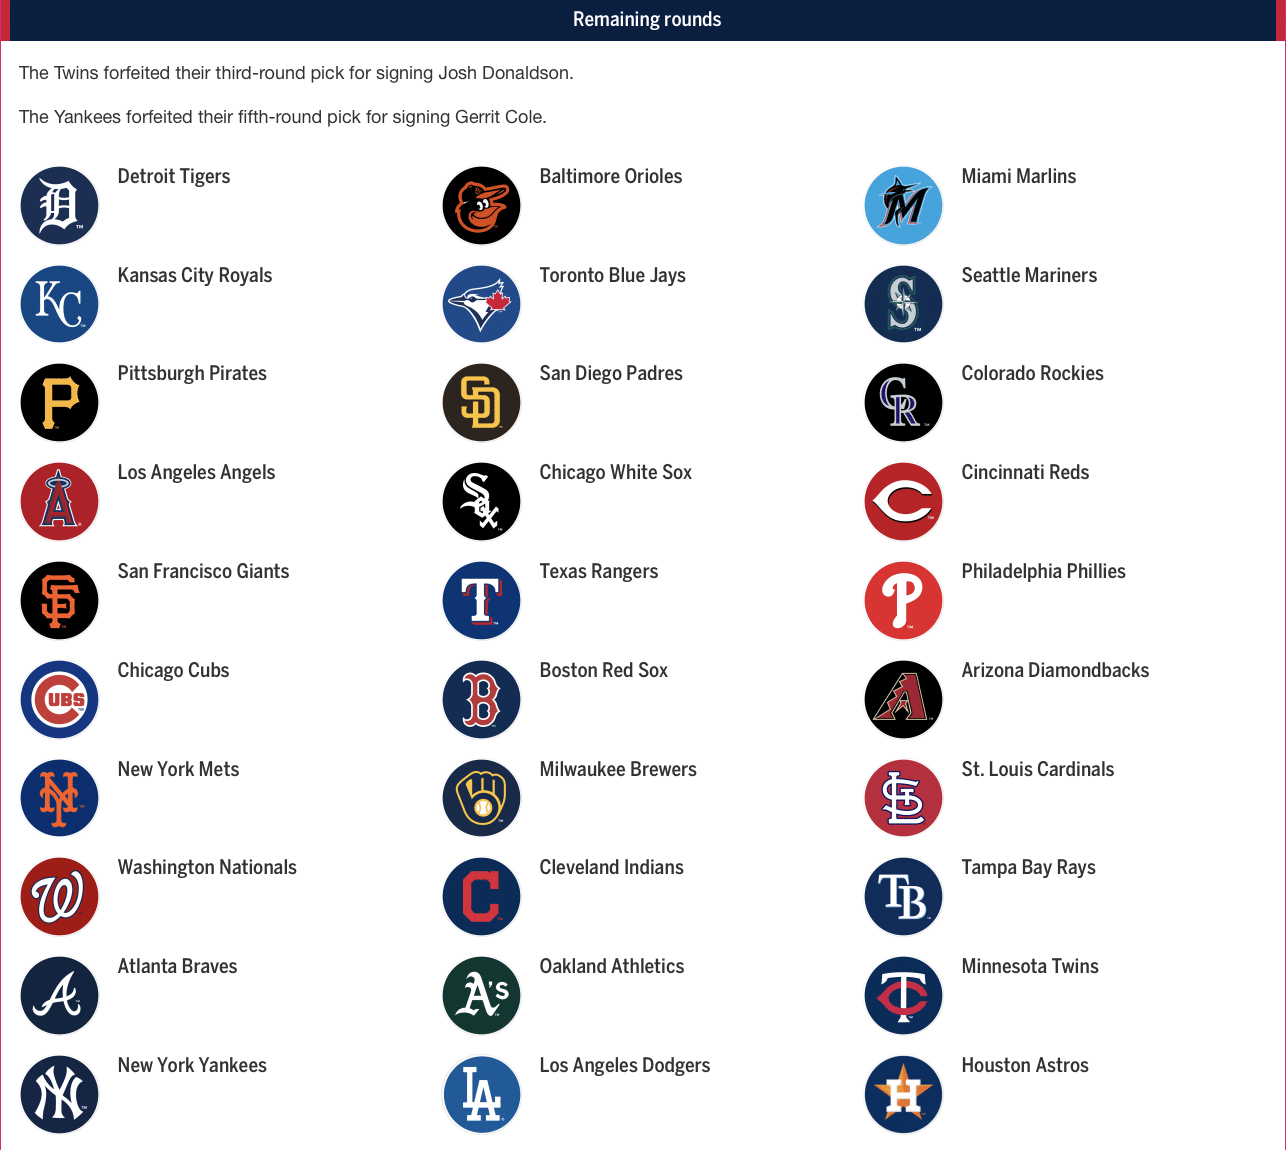 2020 Major League Baseball Draft